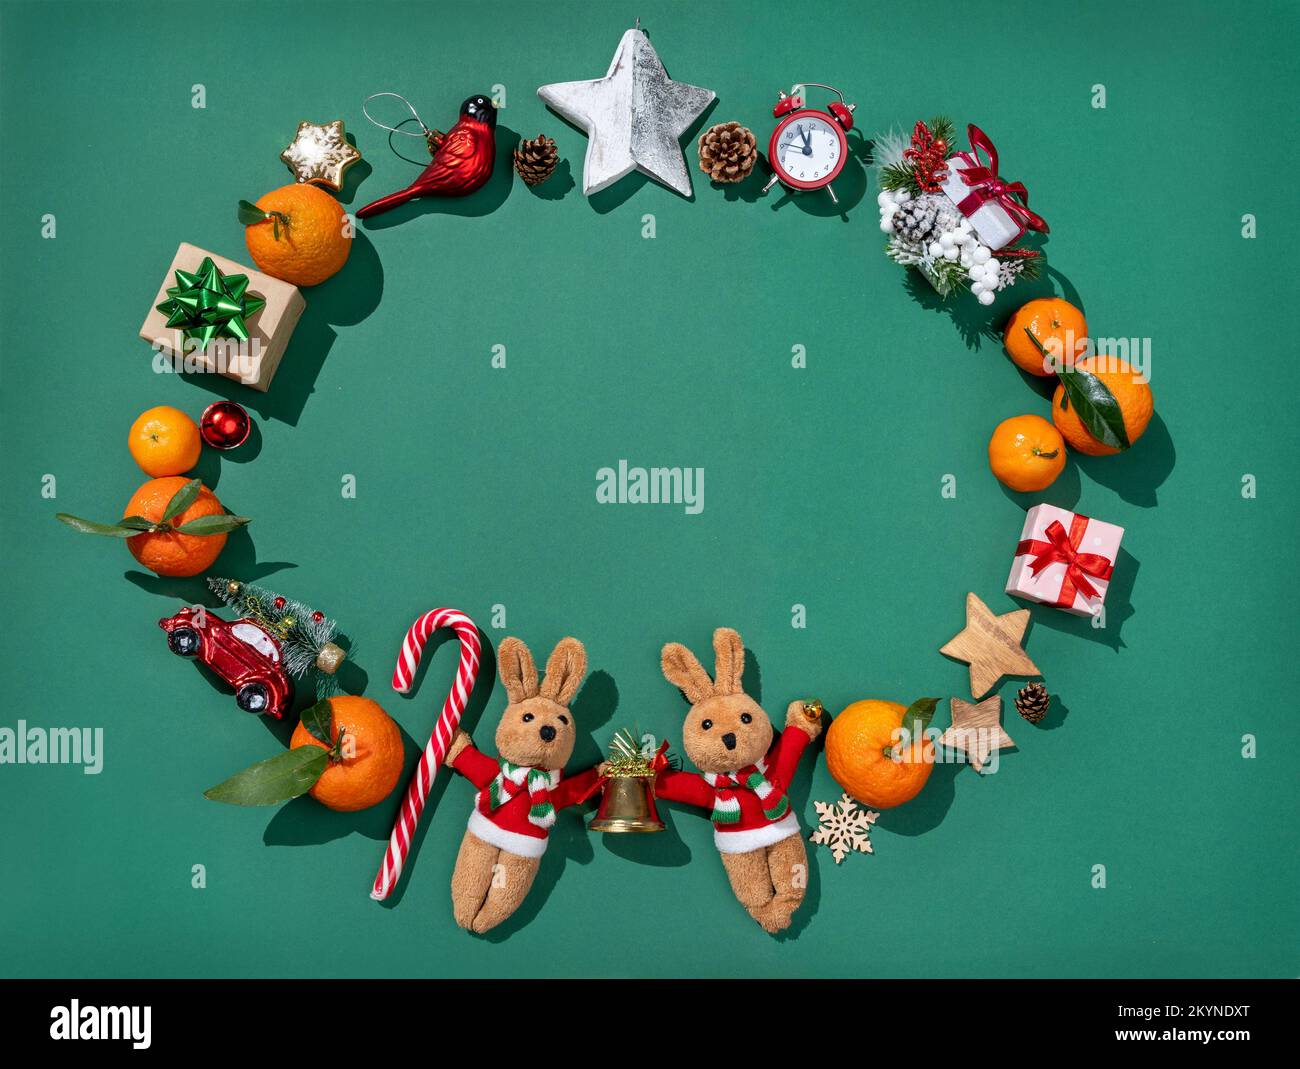 Weihnachtsdekorationen: Tannenbaum-Spielzeug, Mandarinen, Geschenkboxen auf grünem Hintergrund. Merry Christmas und Happy New Year Concept Stockfoto